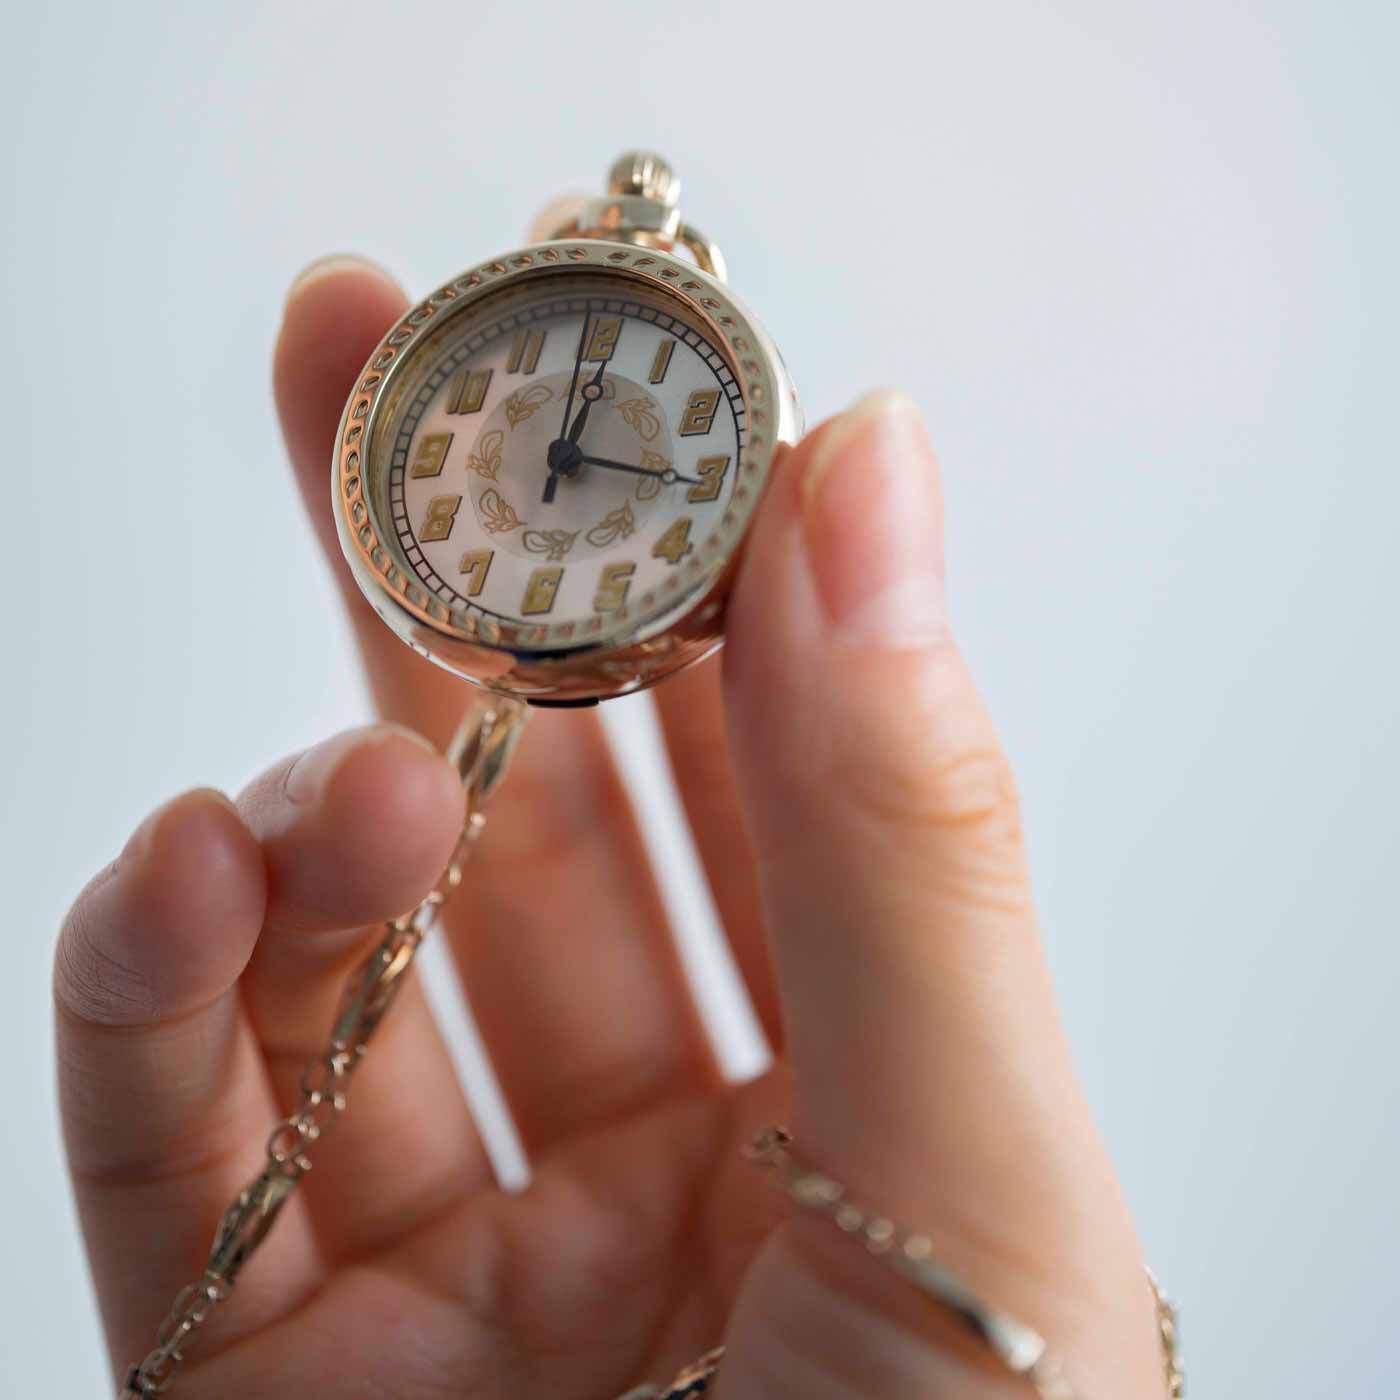 ＆Stories|滋賀の時計工房と作った アールデコ調の懐中時計〈シャンパンゴールド〉|スマホでもなく、腕時計でもなく、懐中時計で時間を見る。アナログなそのひと手間が愛おしい。